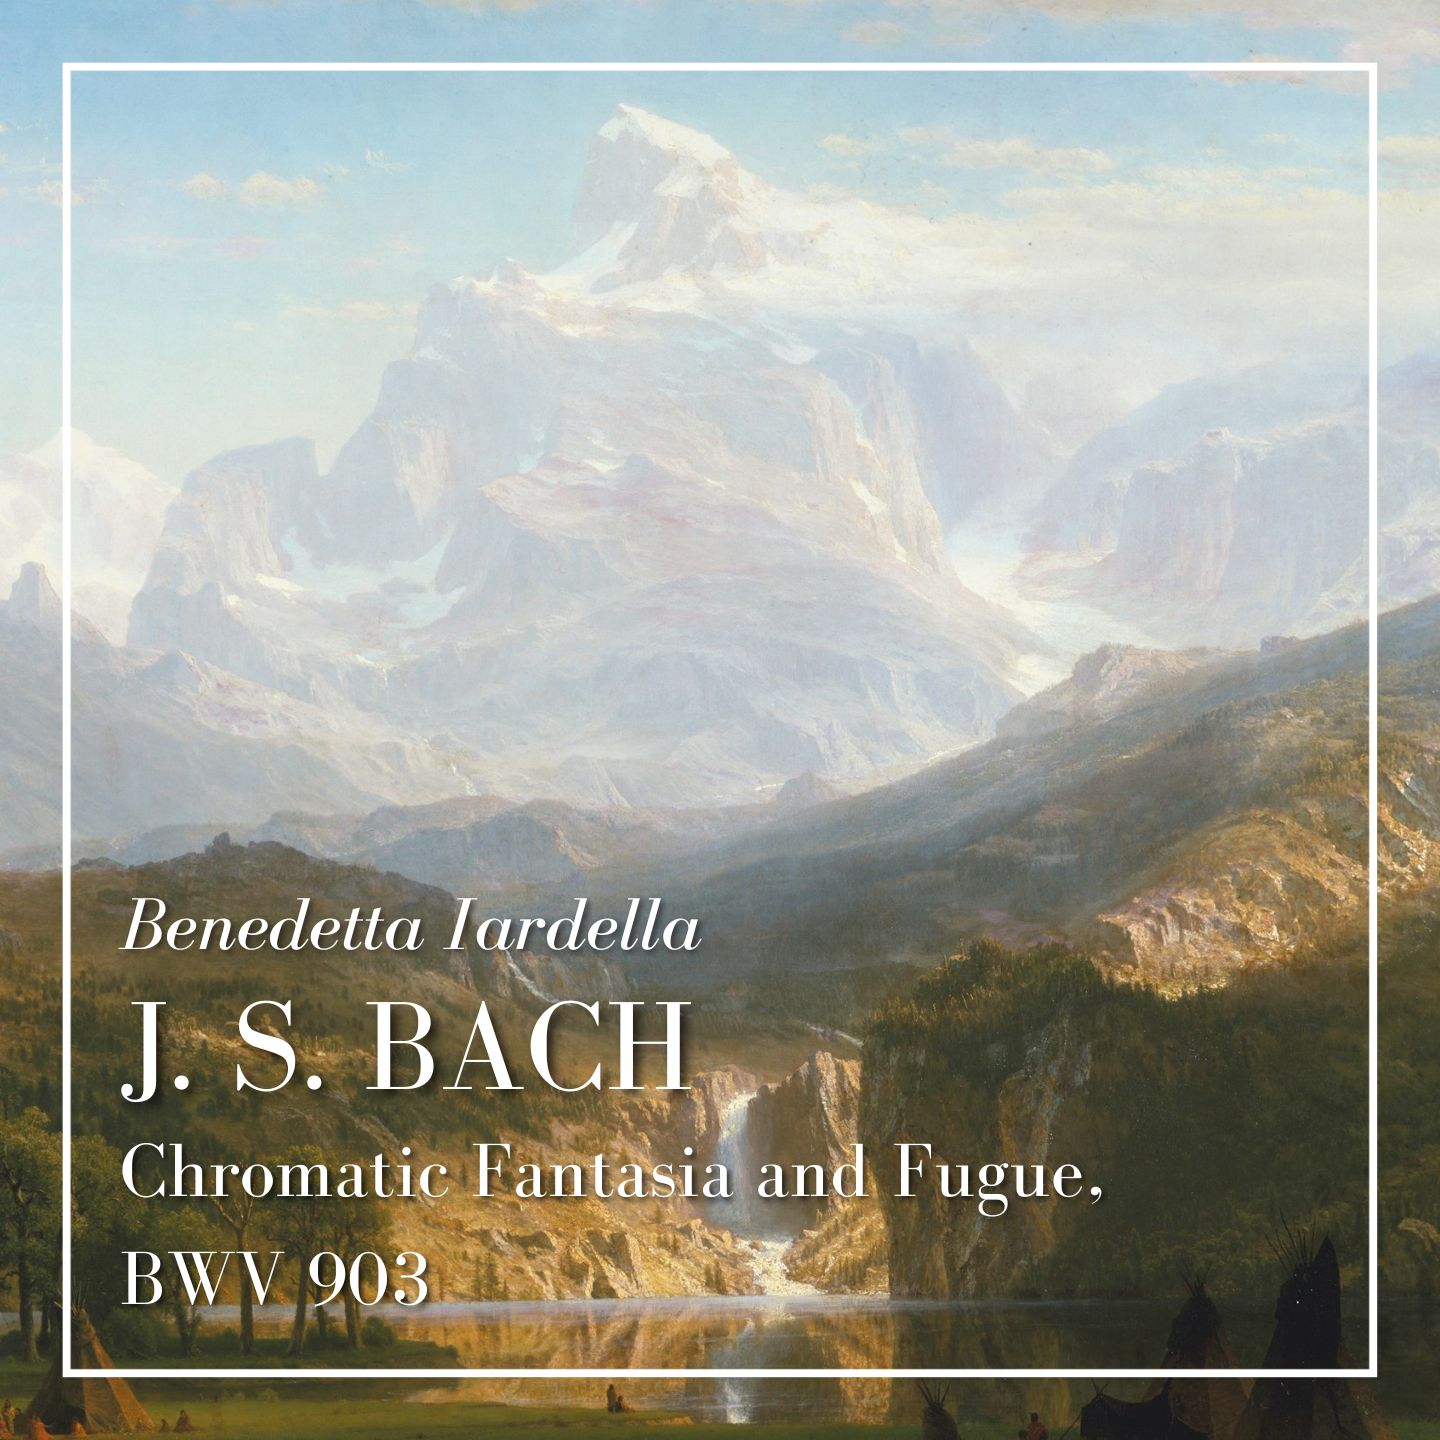 Bach: Chromatic Fantasia and Fugue, BWV 903